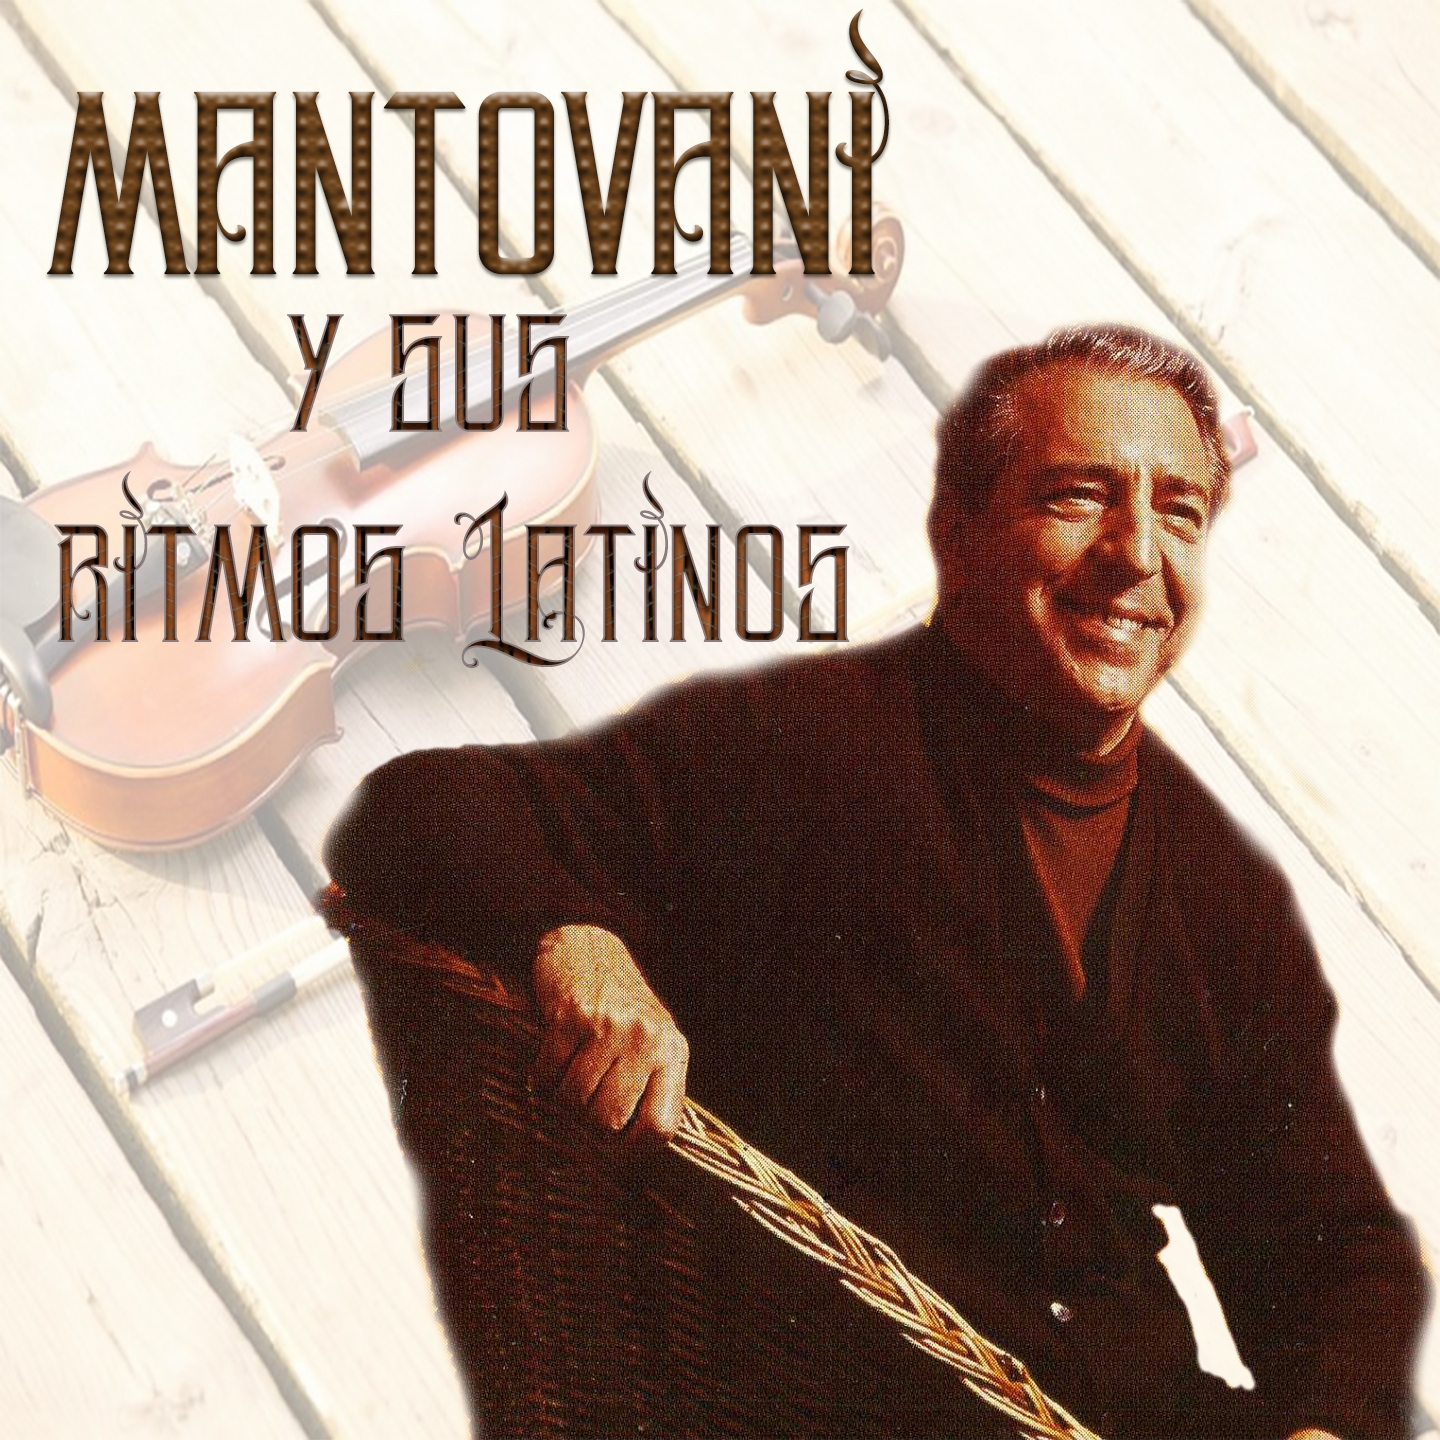 Mantovani y Sus Ritmos Latinos